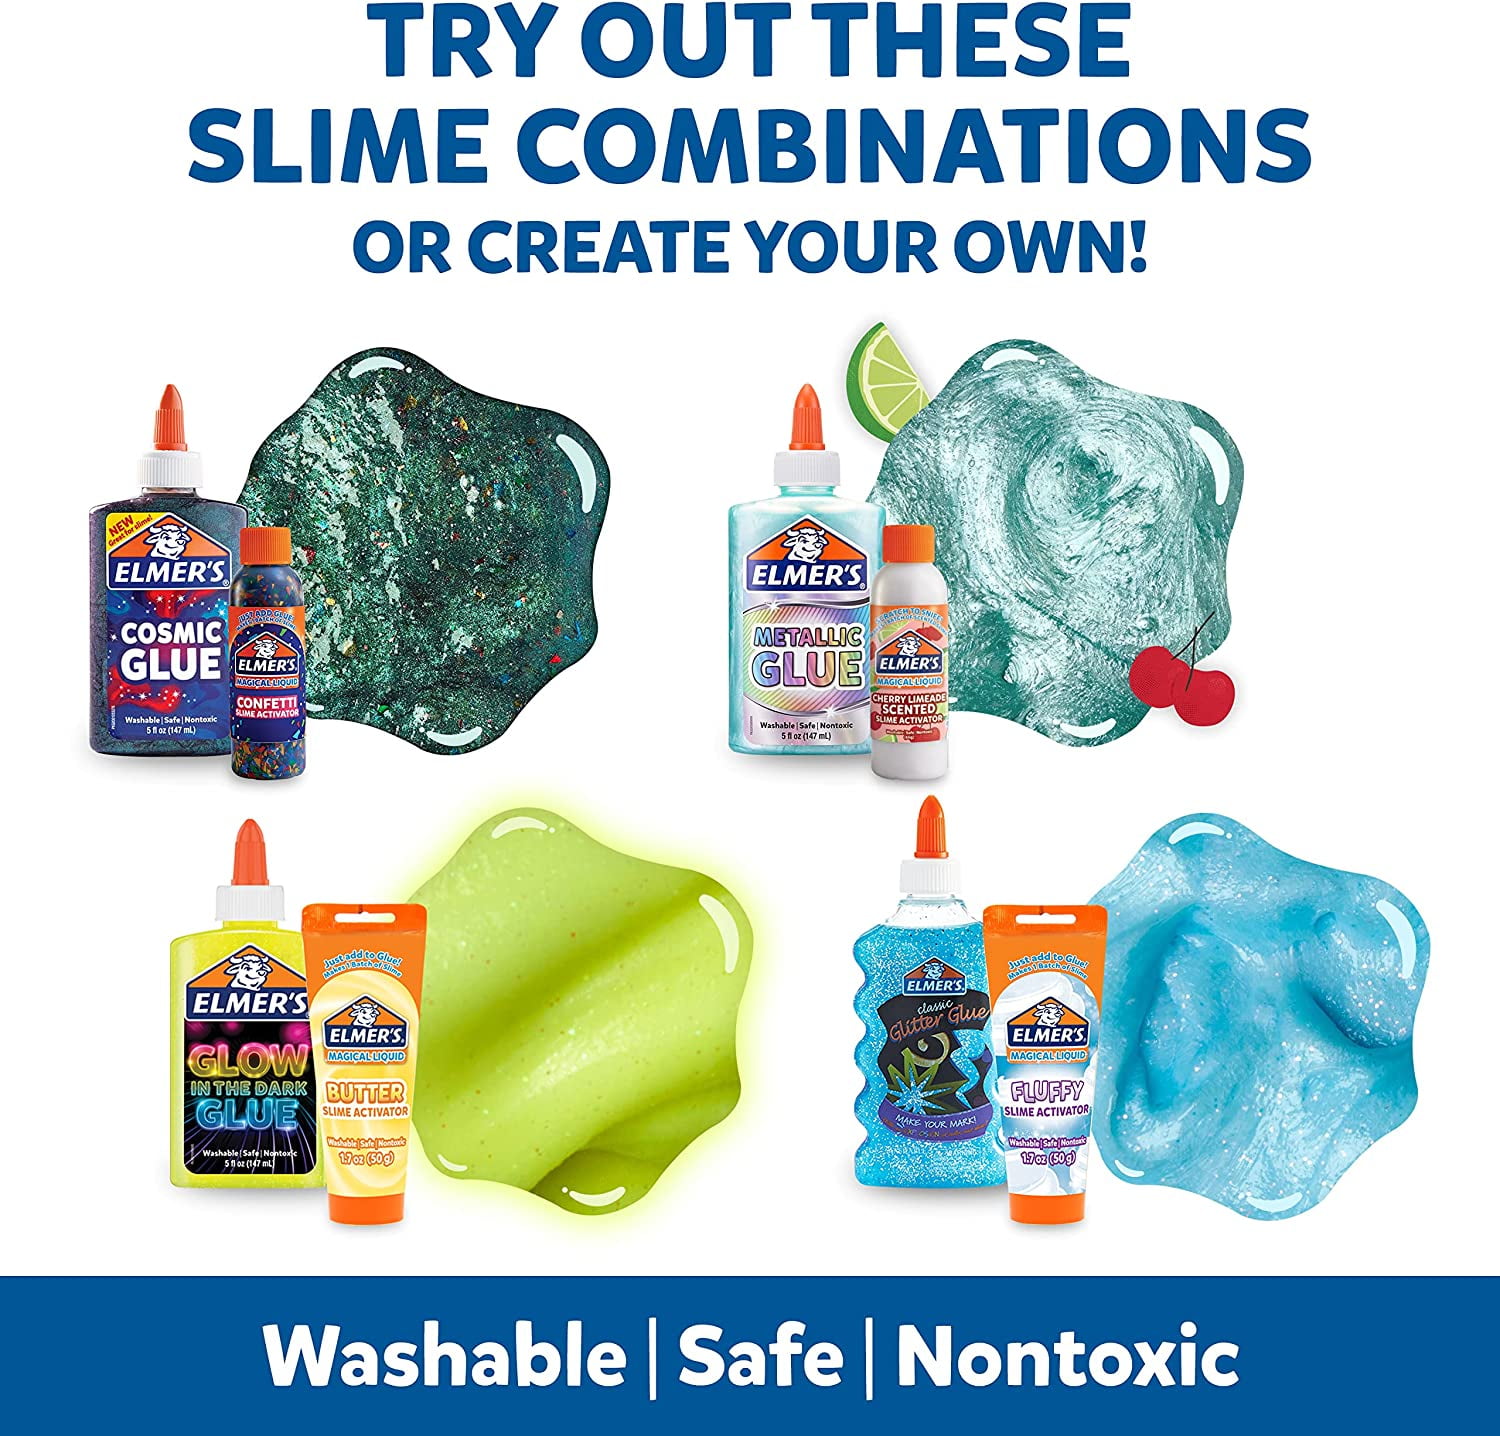 Elmer's Slime Kit - Fluffy Slime Kit, BLICK Art Materials